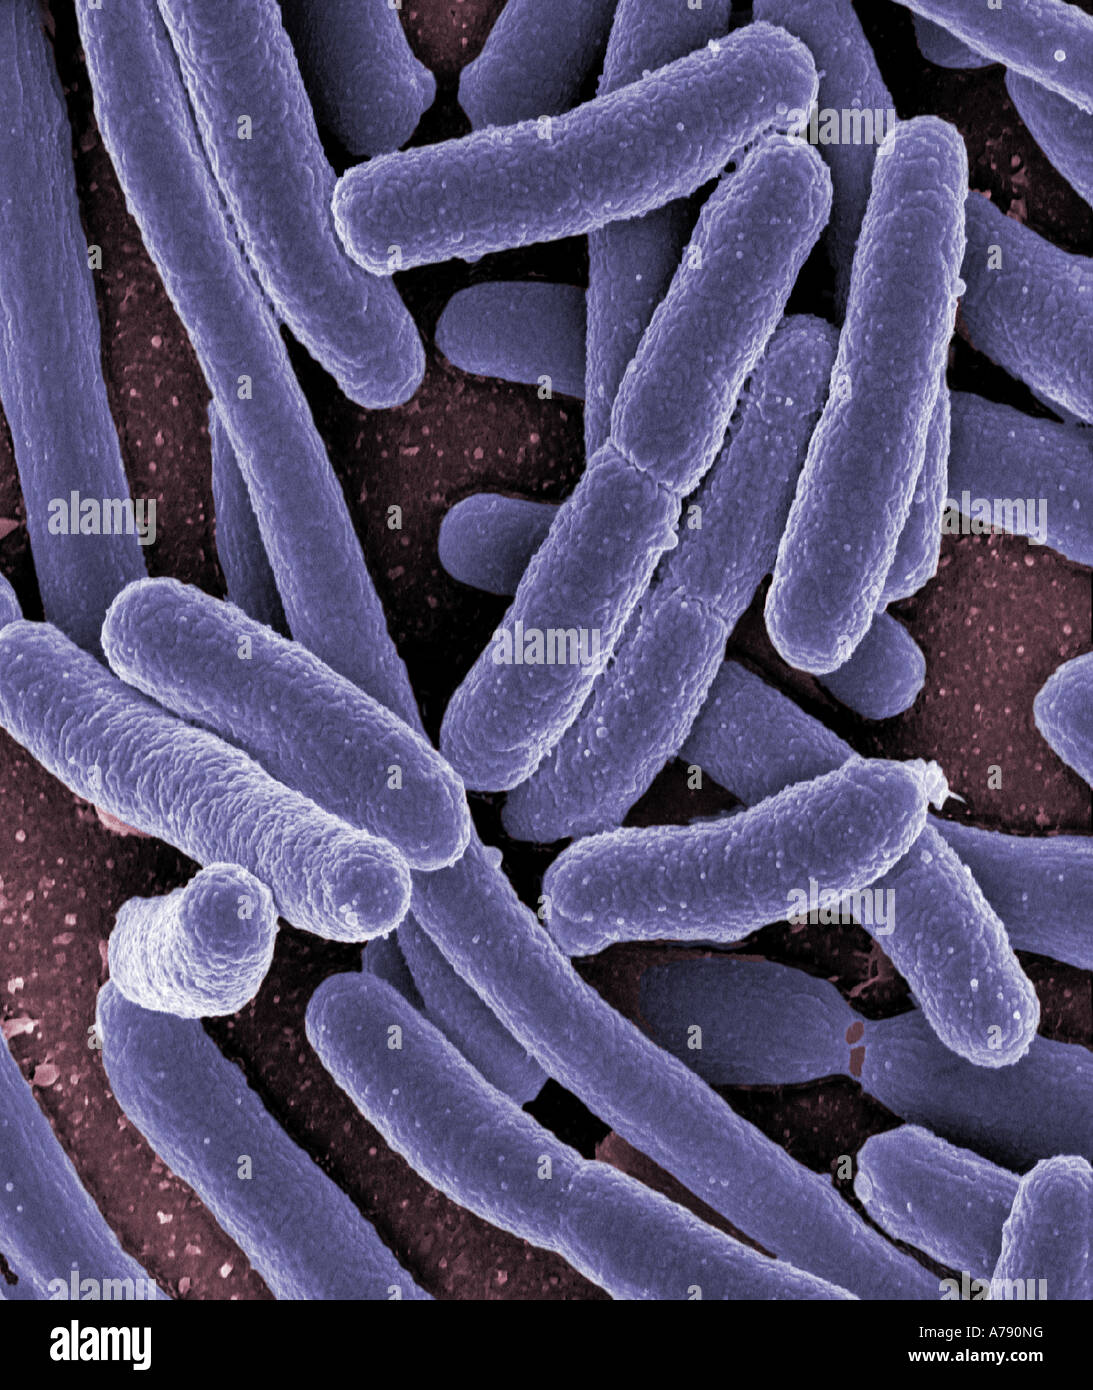 Micrografia elettronica a scansione di Escherichia coli cresciute in coltura e fatto aderire ad un vetrino Foto Stock